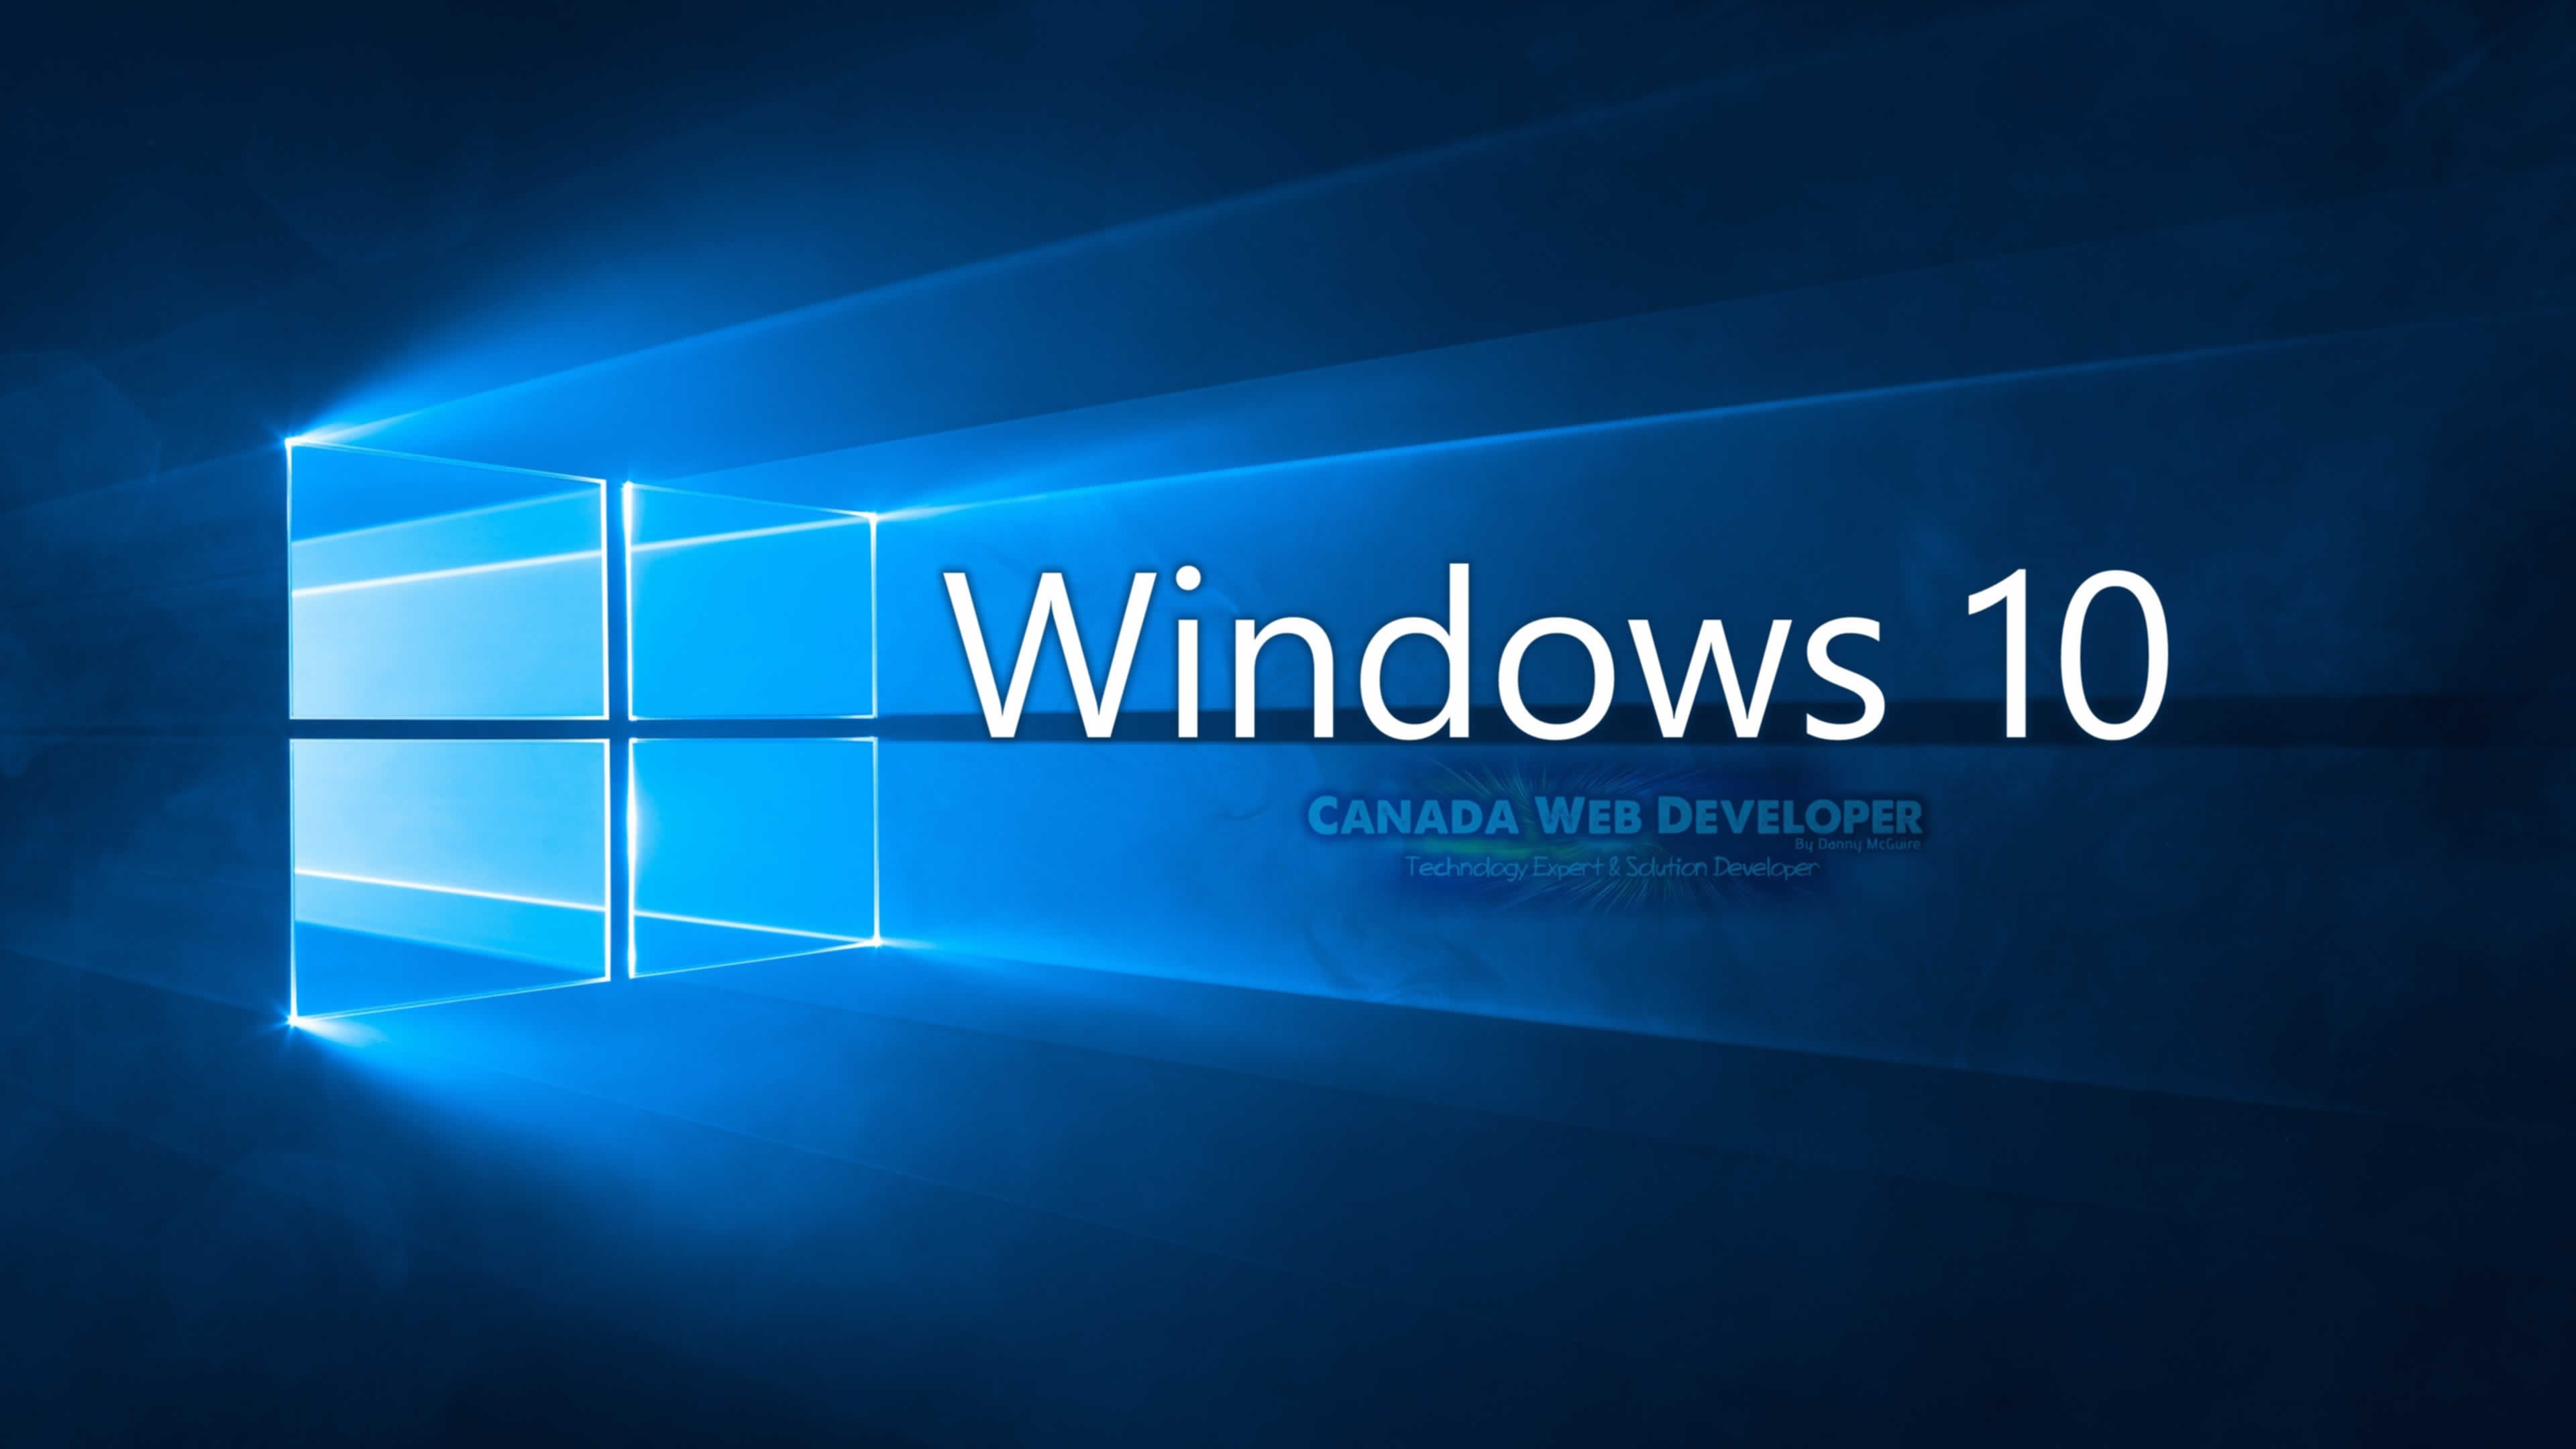 Windows 10 иероглифы